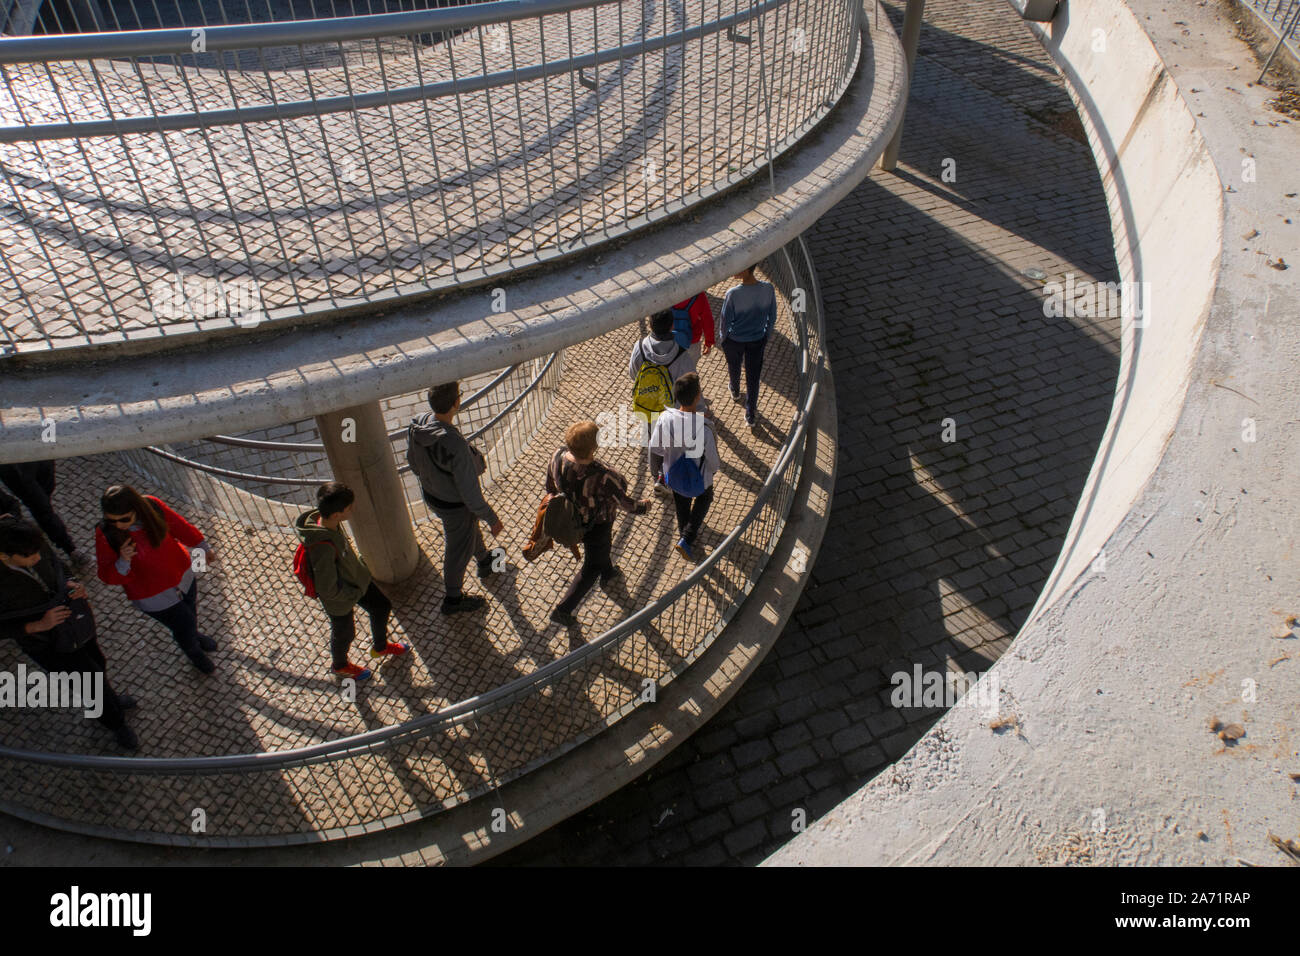 Les gens marcher dans une allée en pavés spiral Saville Espagne Banque D'Images